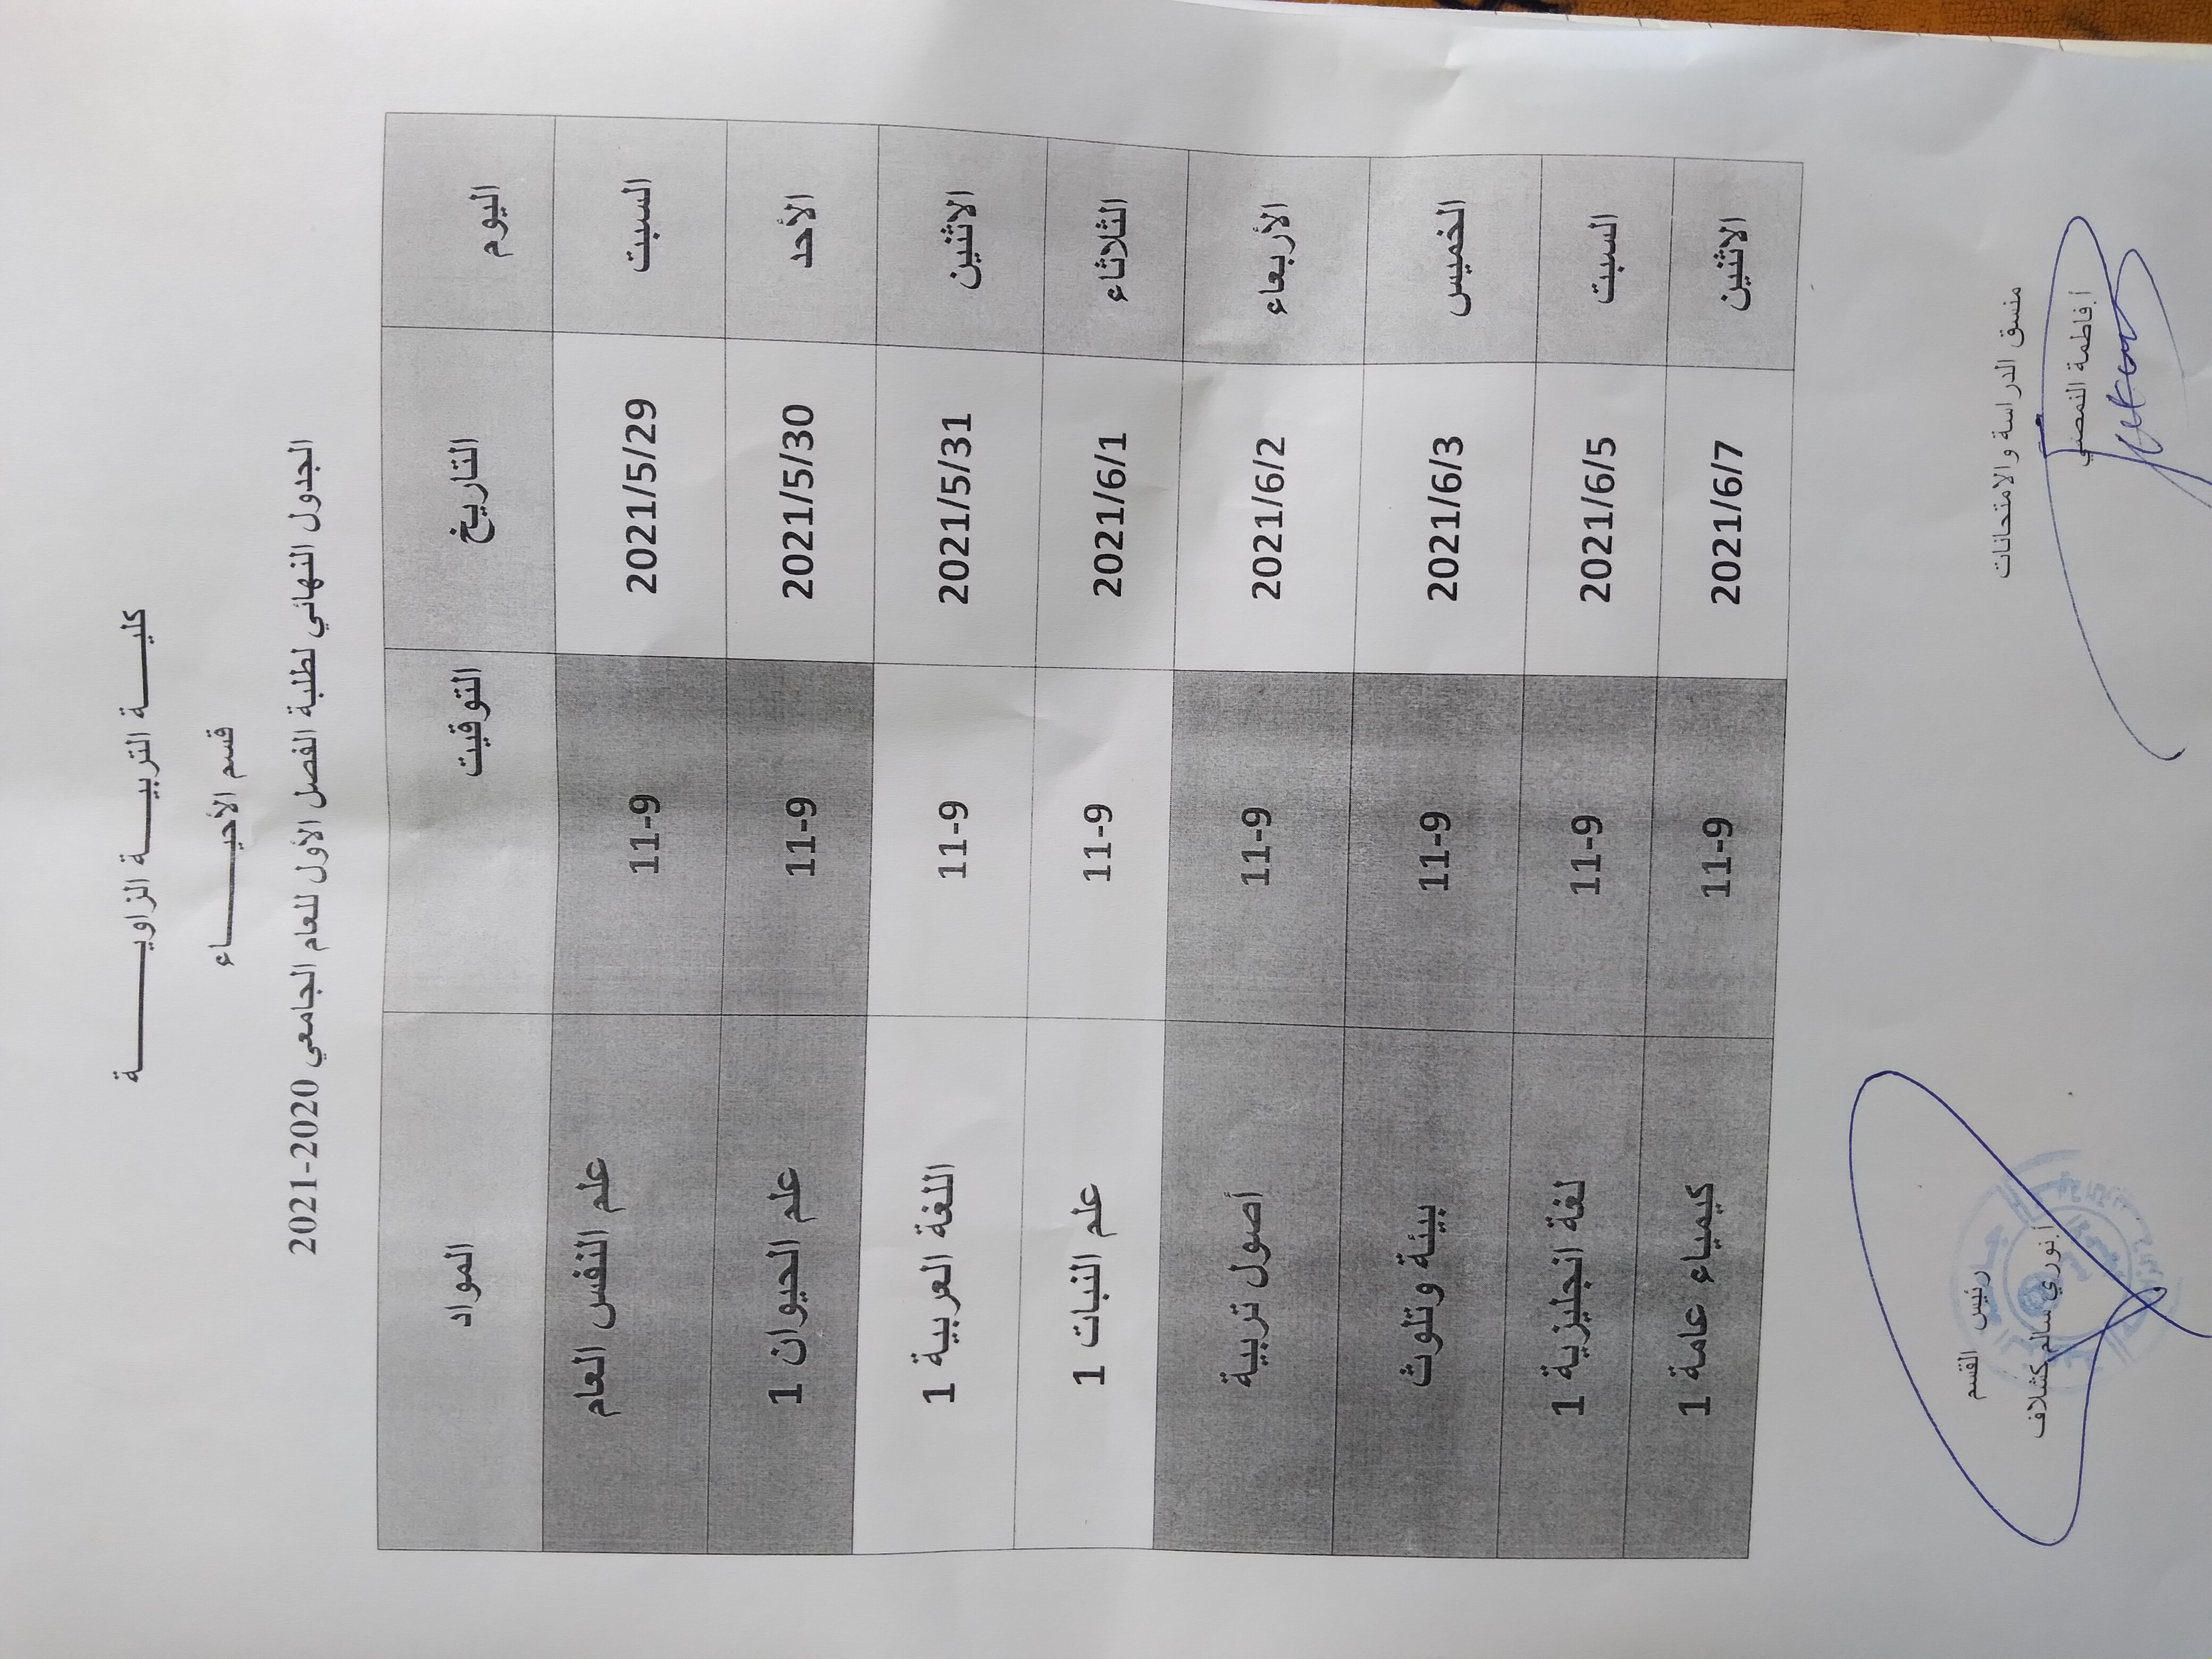 جدول الامتحان النهائي للفصل الأول بقسم الأحياء